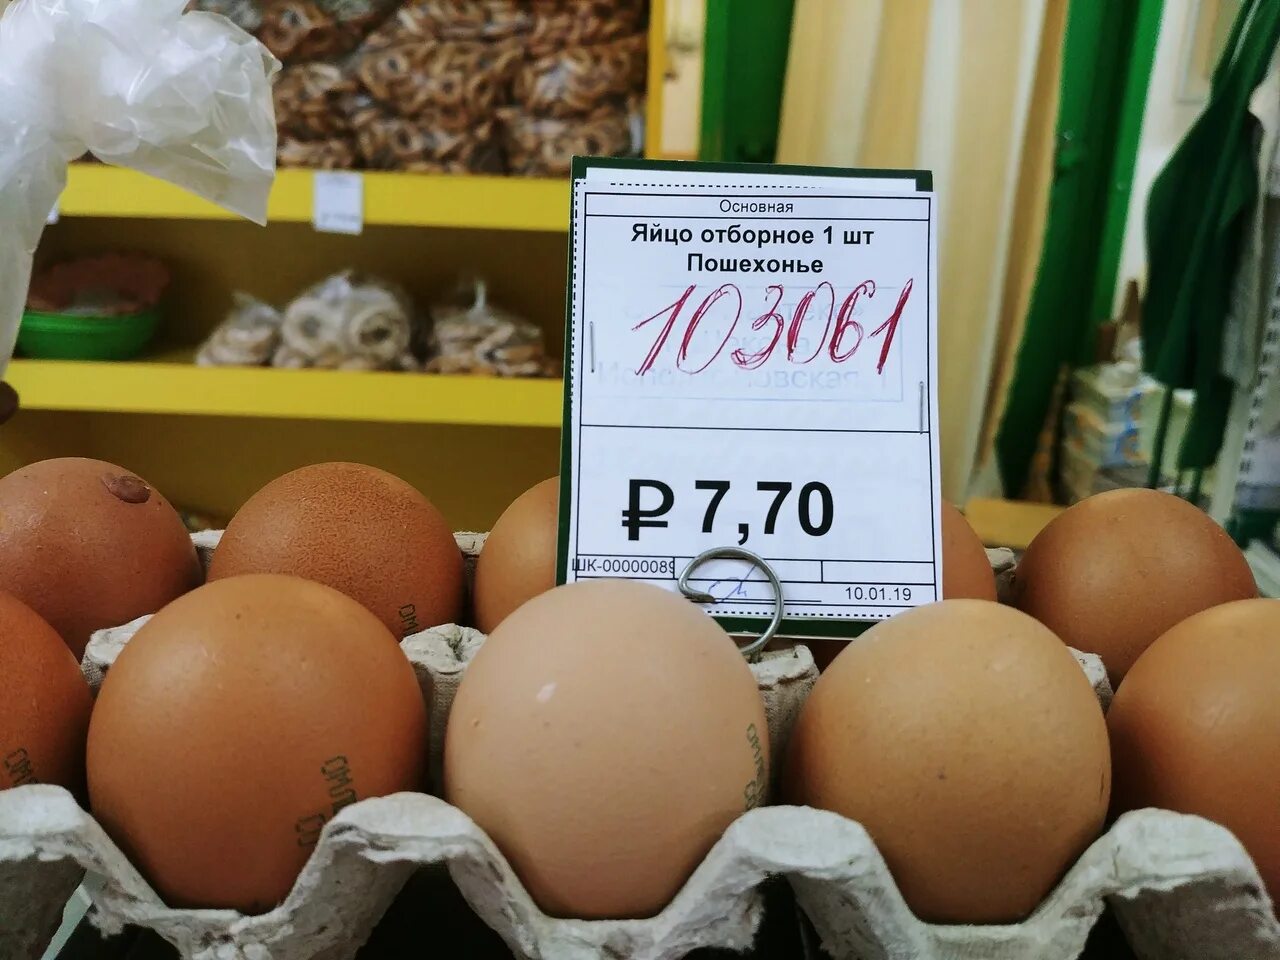 Яйца в магазине. Яички в магазине. Ценник на яйца. Яйца на прилавке.